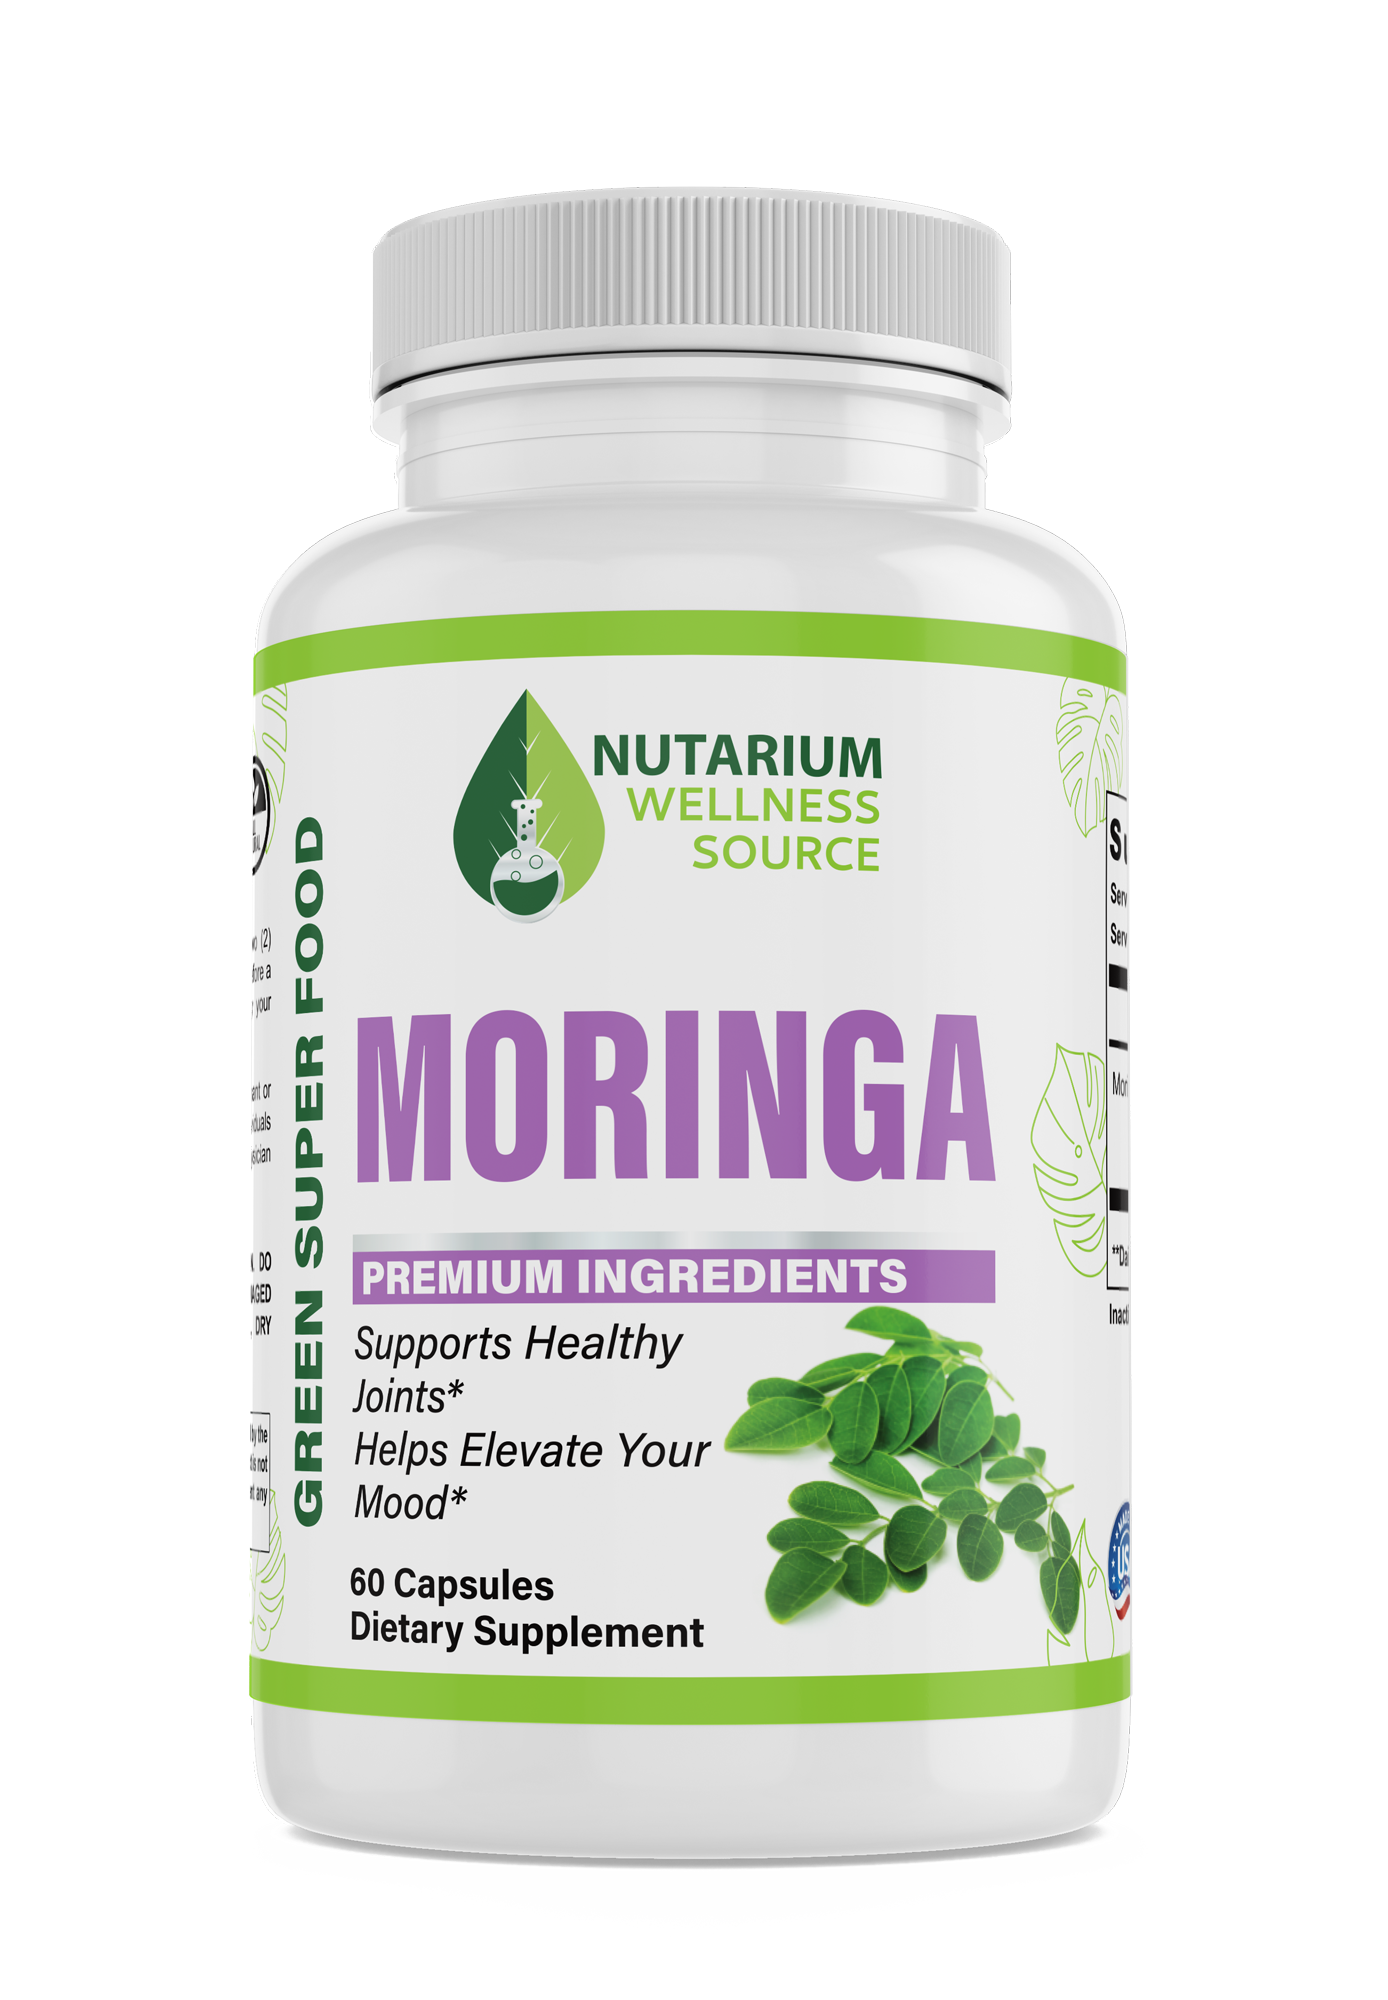 Moringa Oleifera - Nutarium